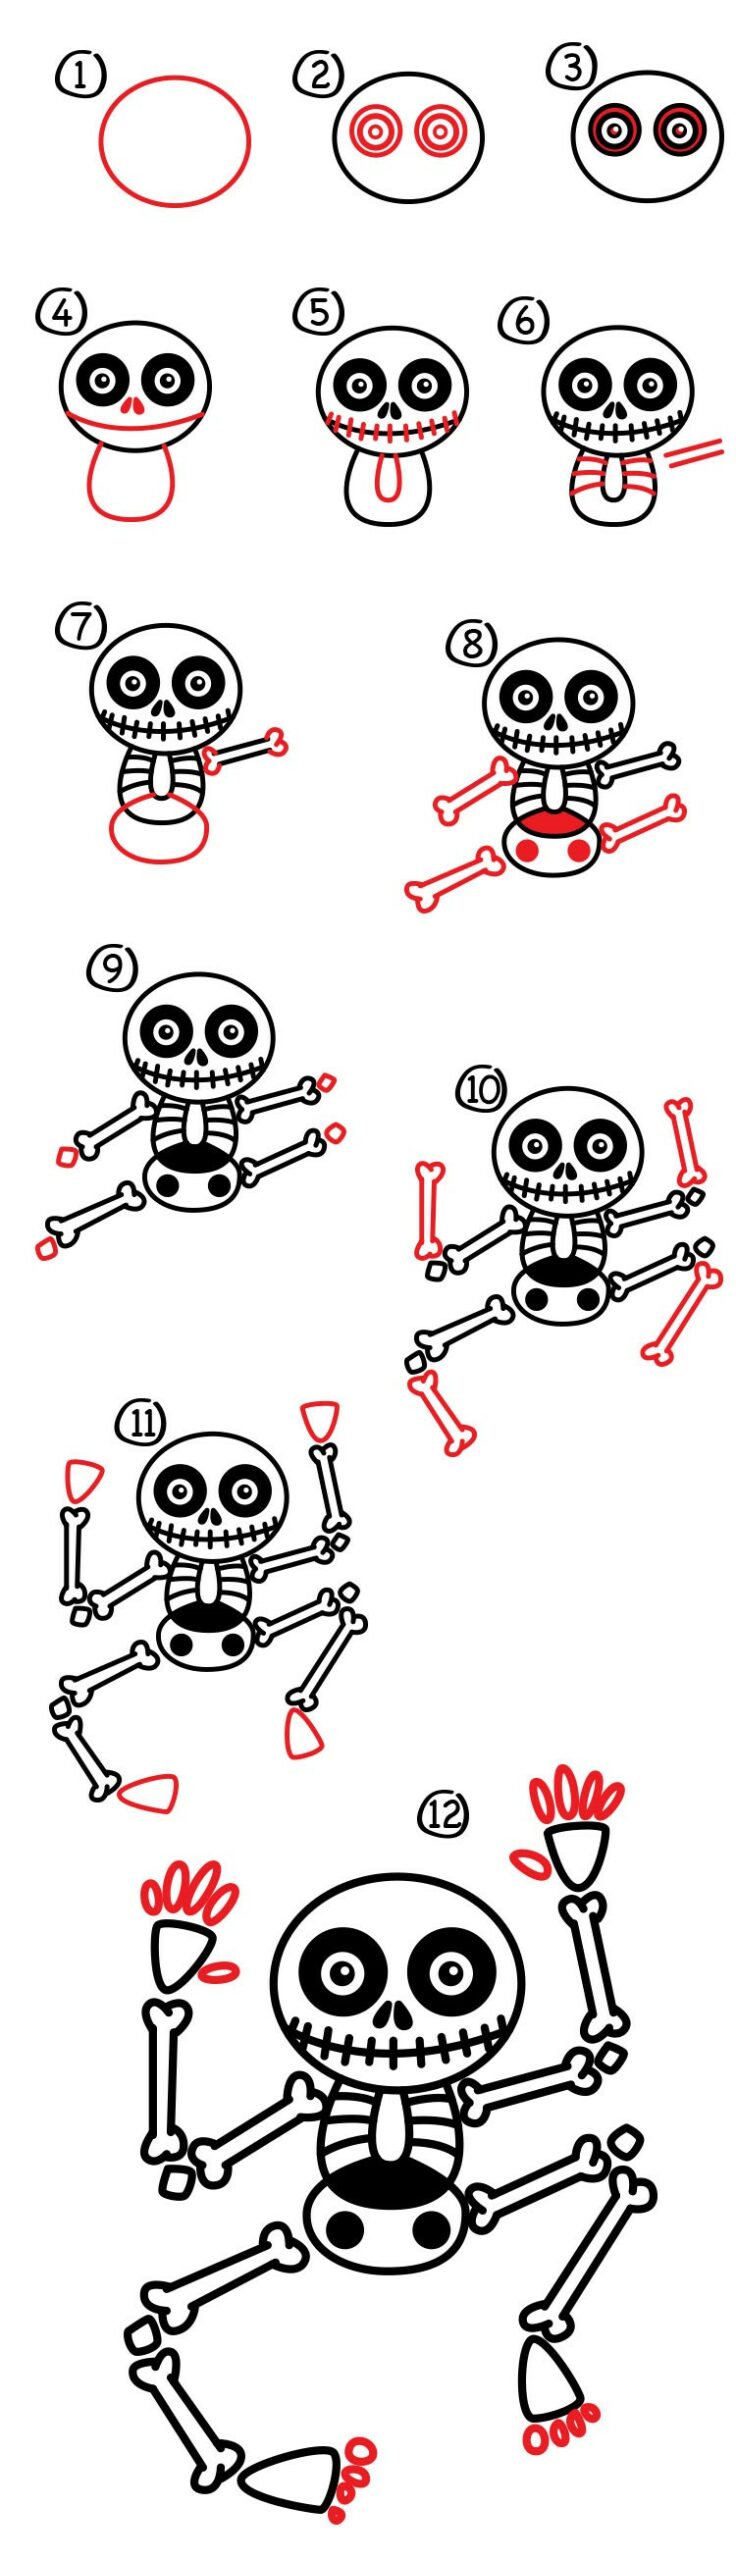 Skelettidee 9 zeichnen ideen